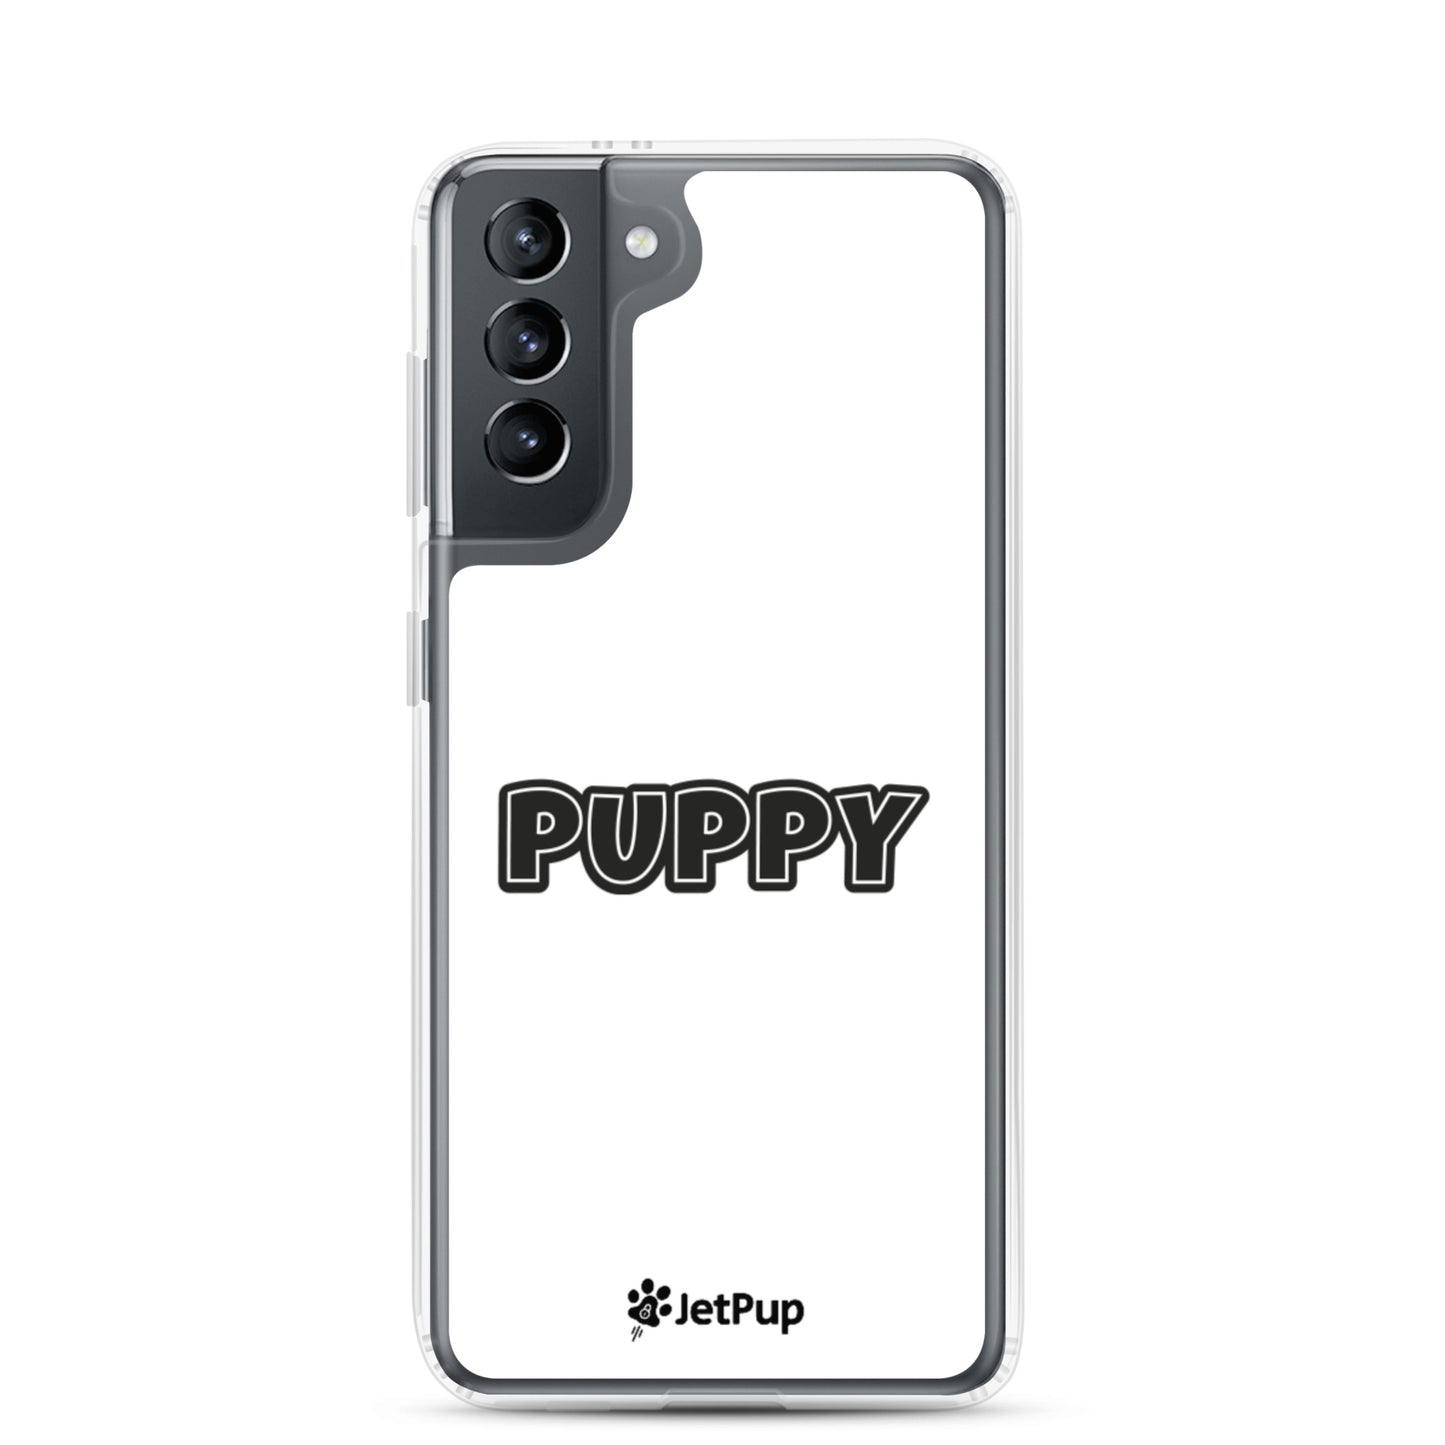 Puppy Samsung Case - White